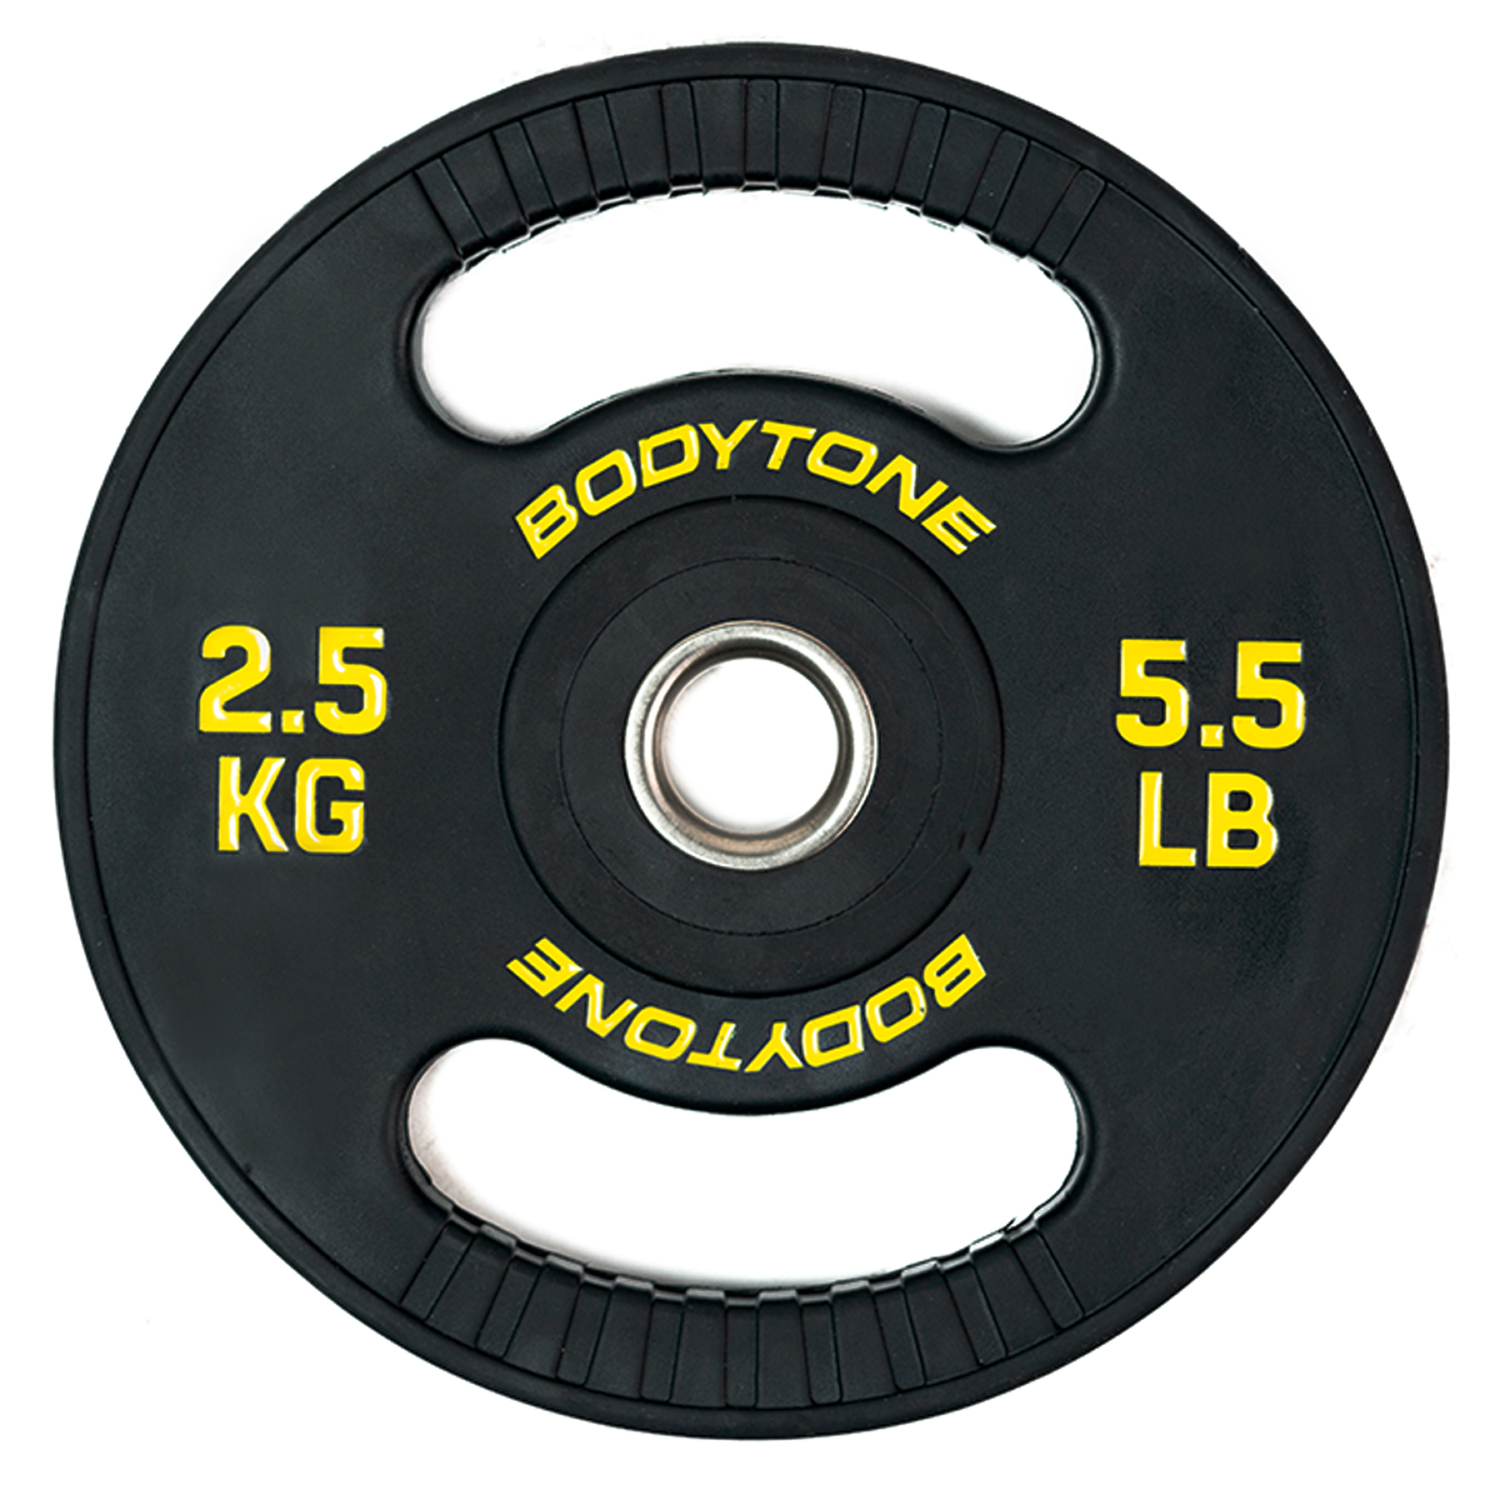 Bodytone Disco Goma 2,5 Kg Con Agarre 28mm disco pesas